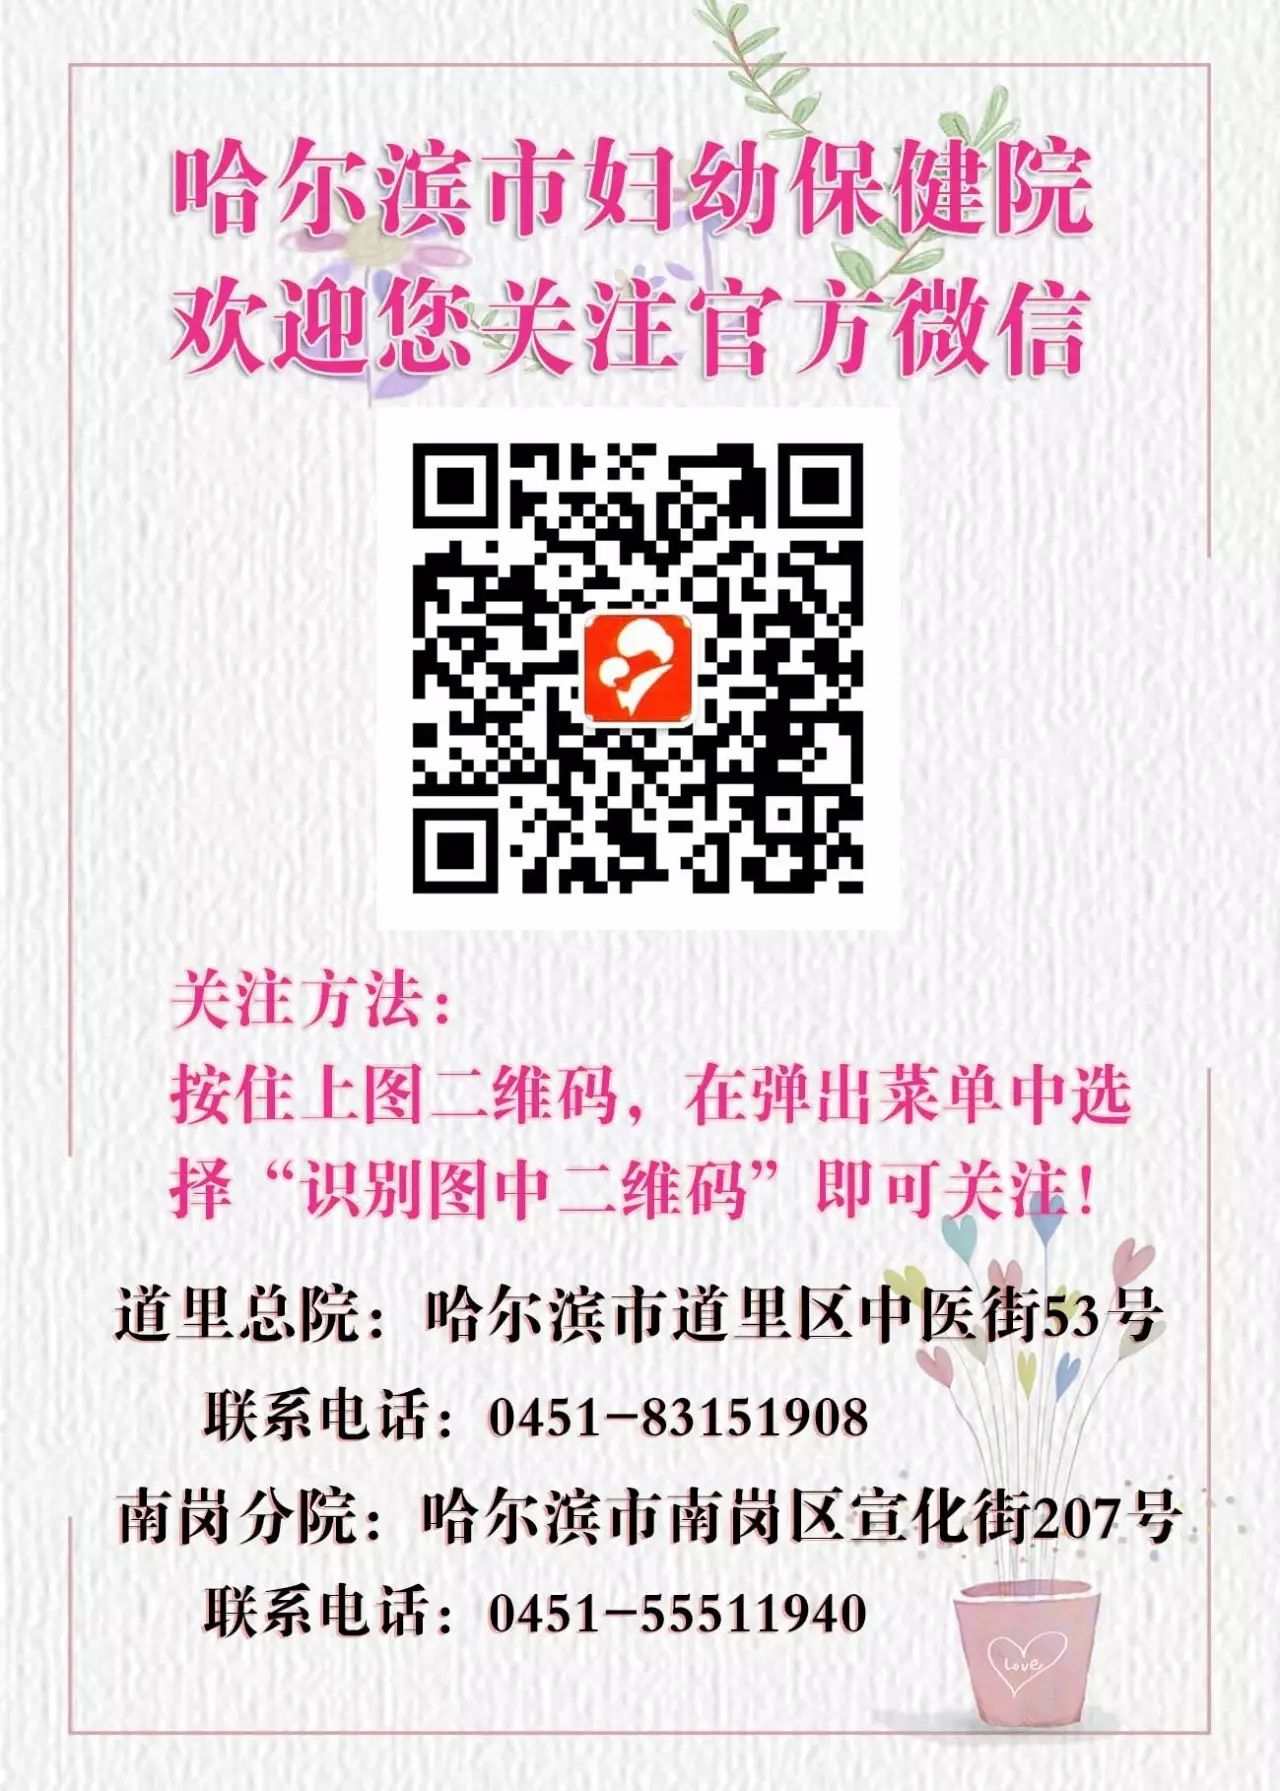 哈尔滨市妇幼保健计划生育服务中心南岗院区推出“新年送大礼”活动